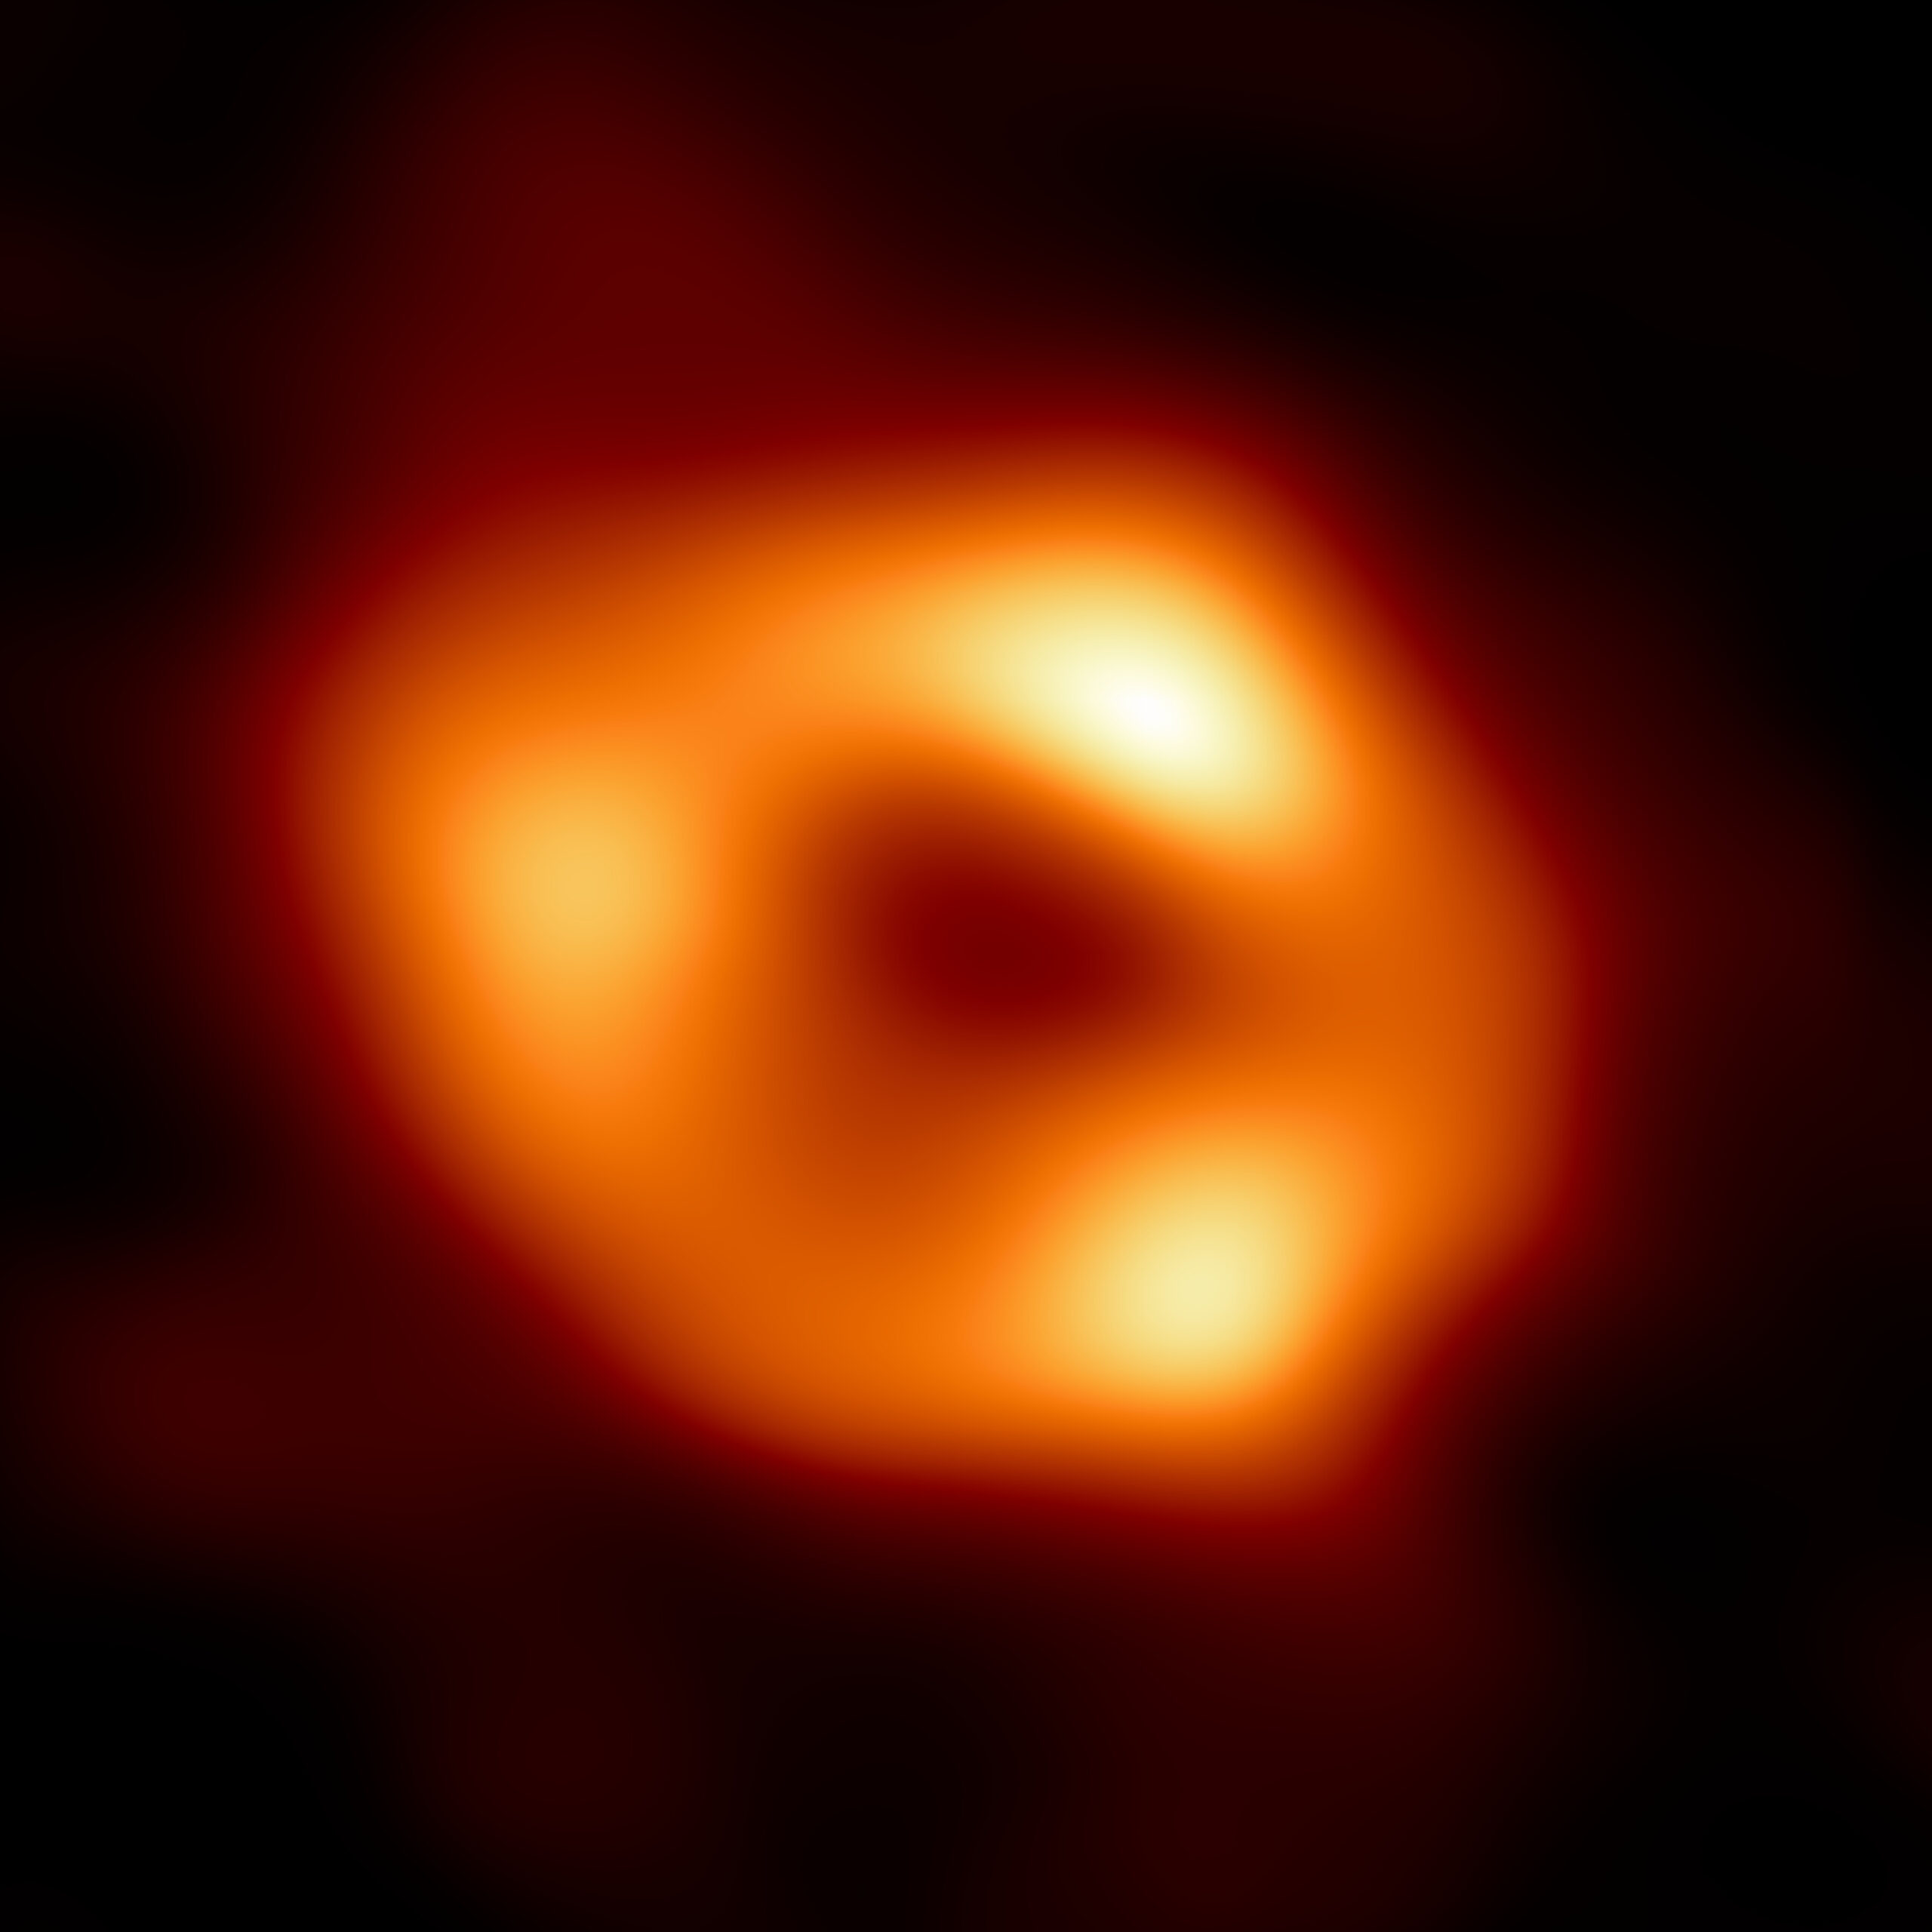 Imagen del agujero negro supermasivo Sagitario A*